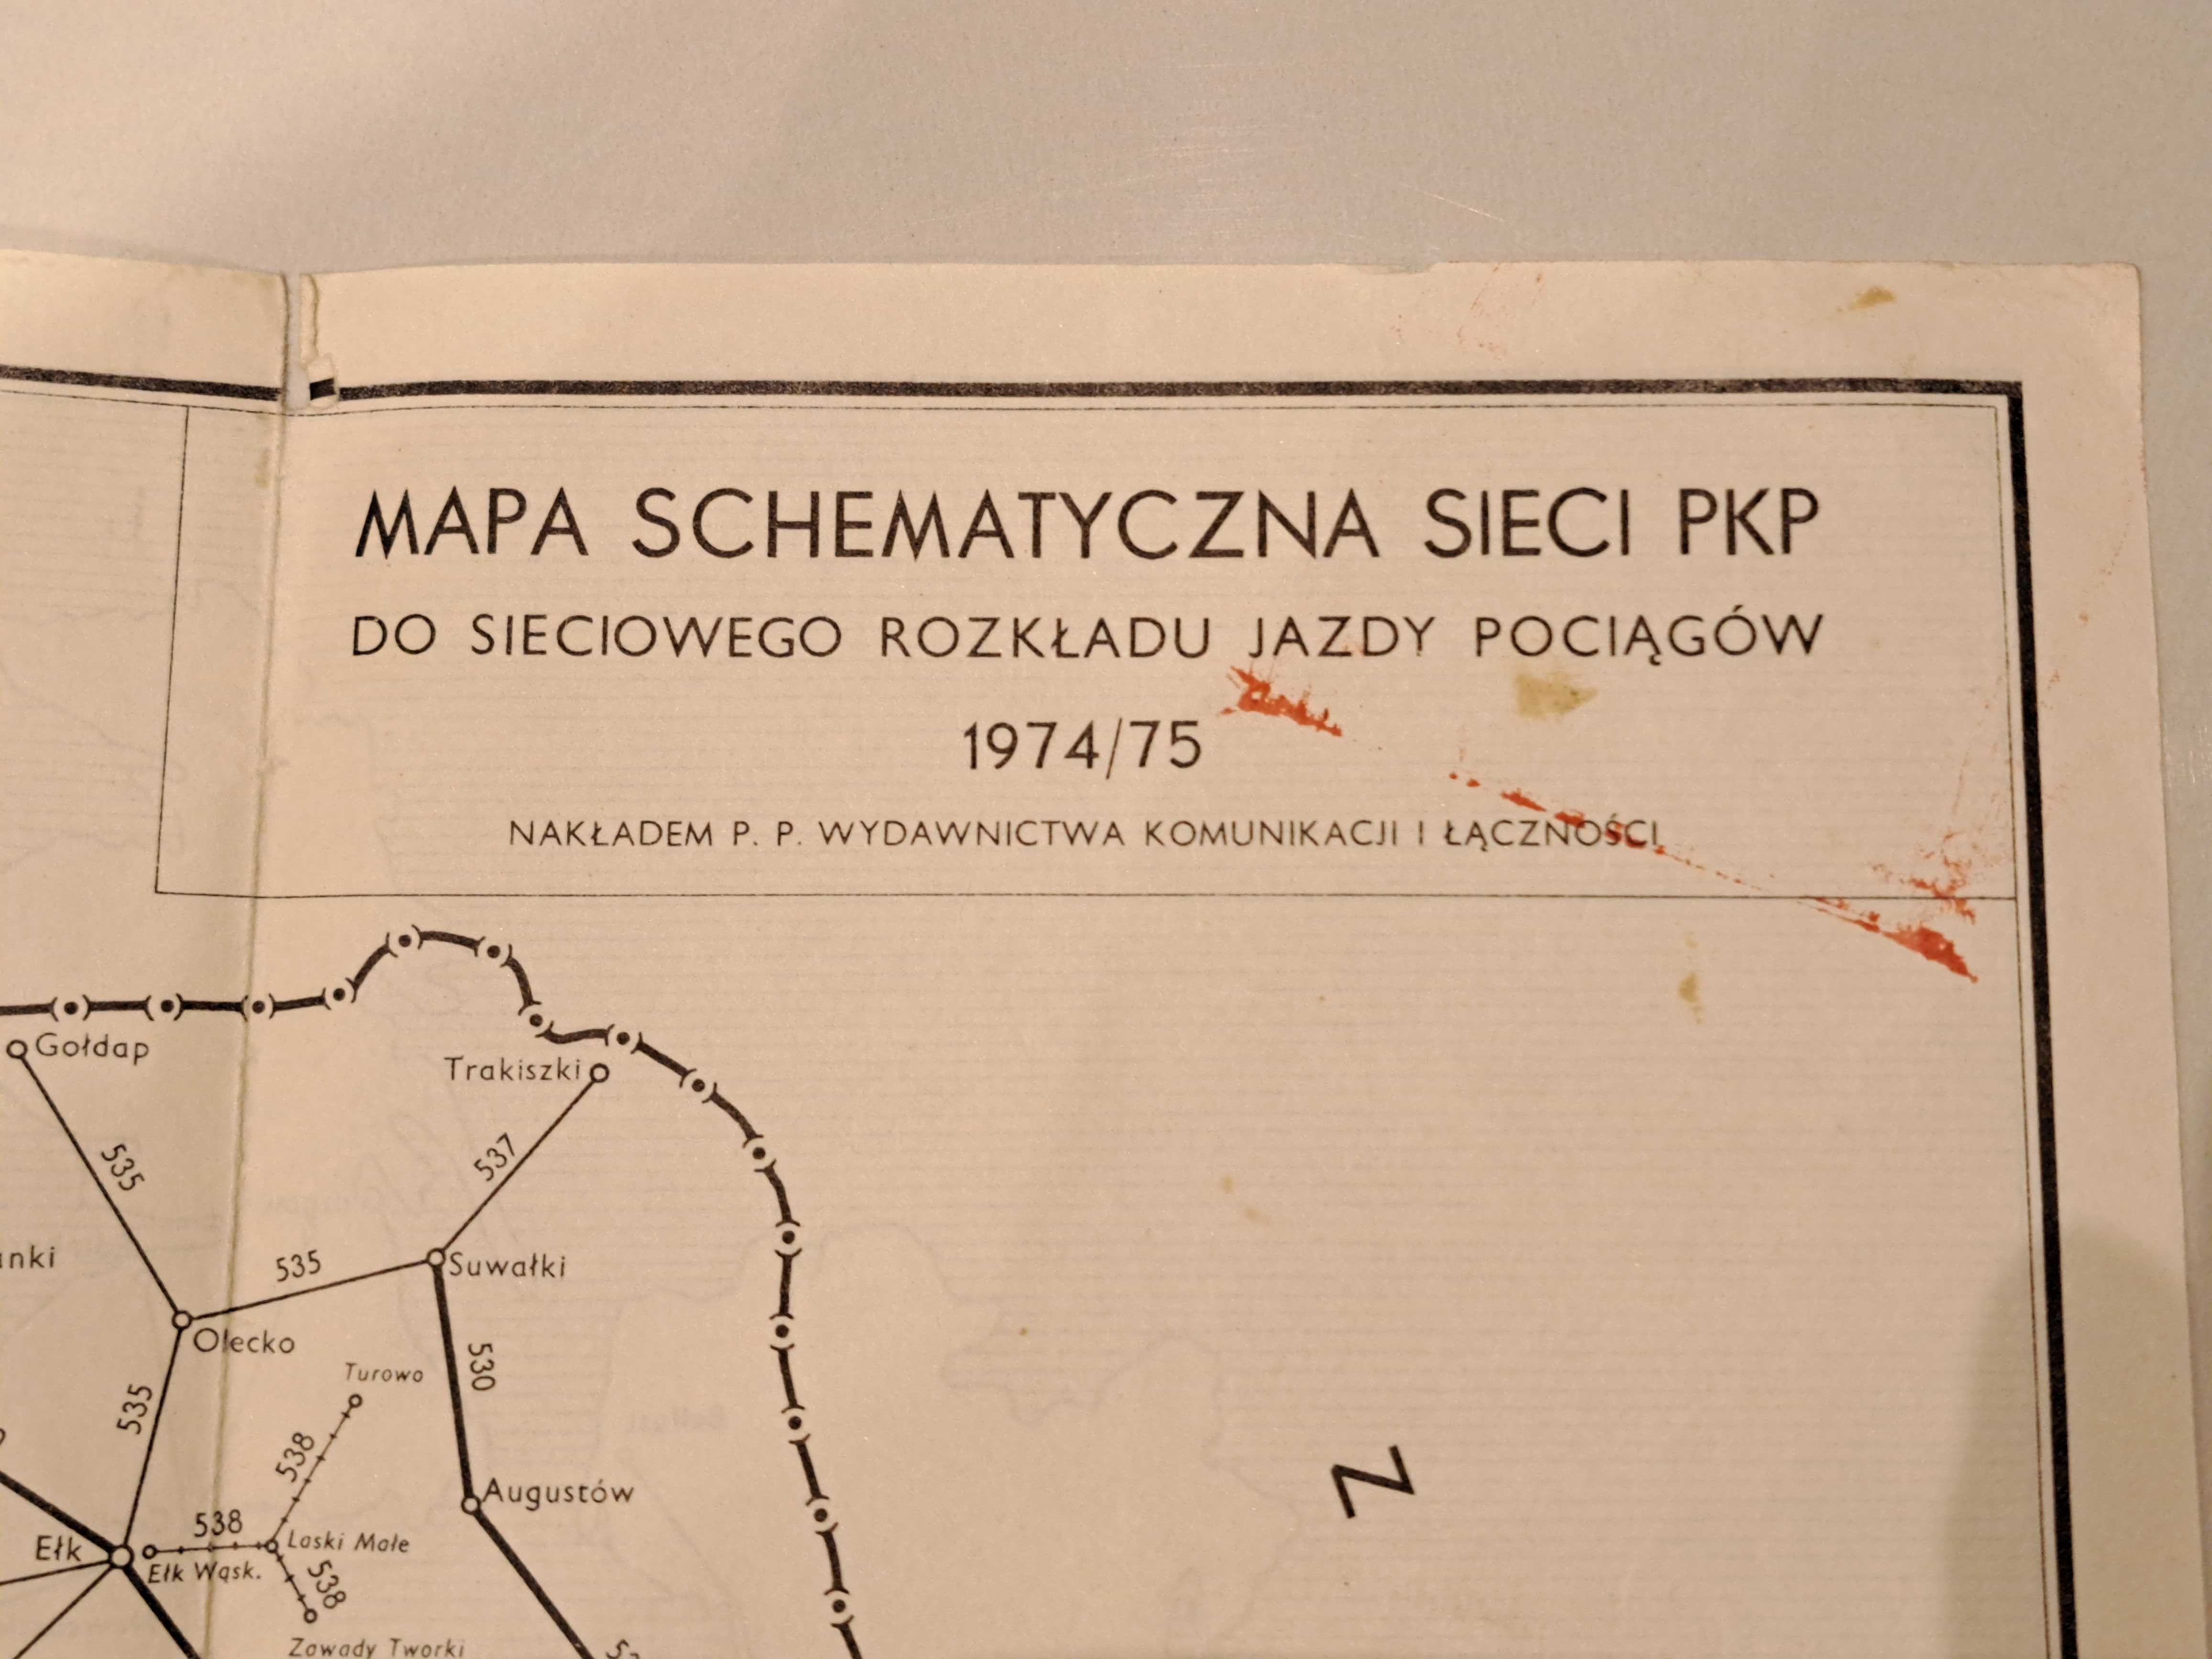 PRL 1974/75 Mapa PKP Mapa schematyczna sieci kolejowej Europa i Polska